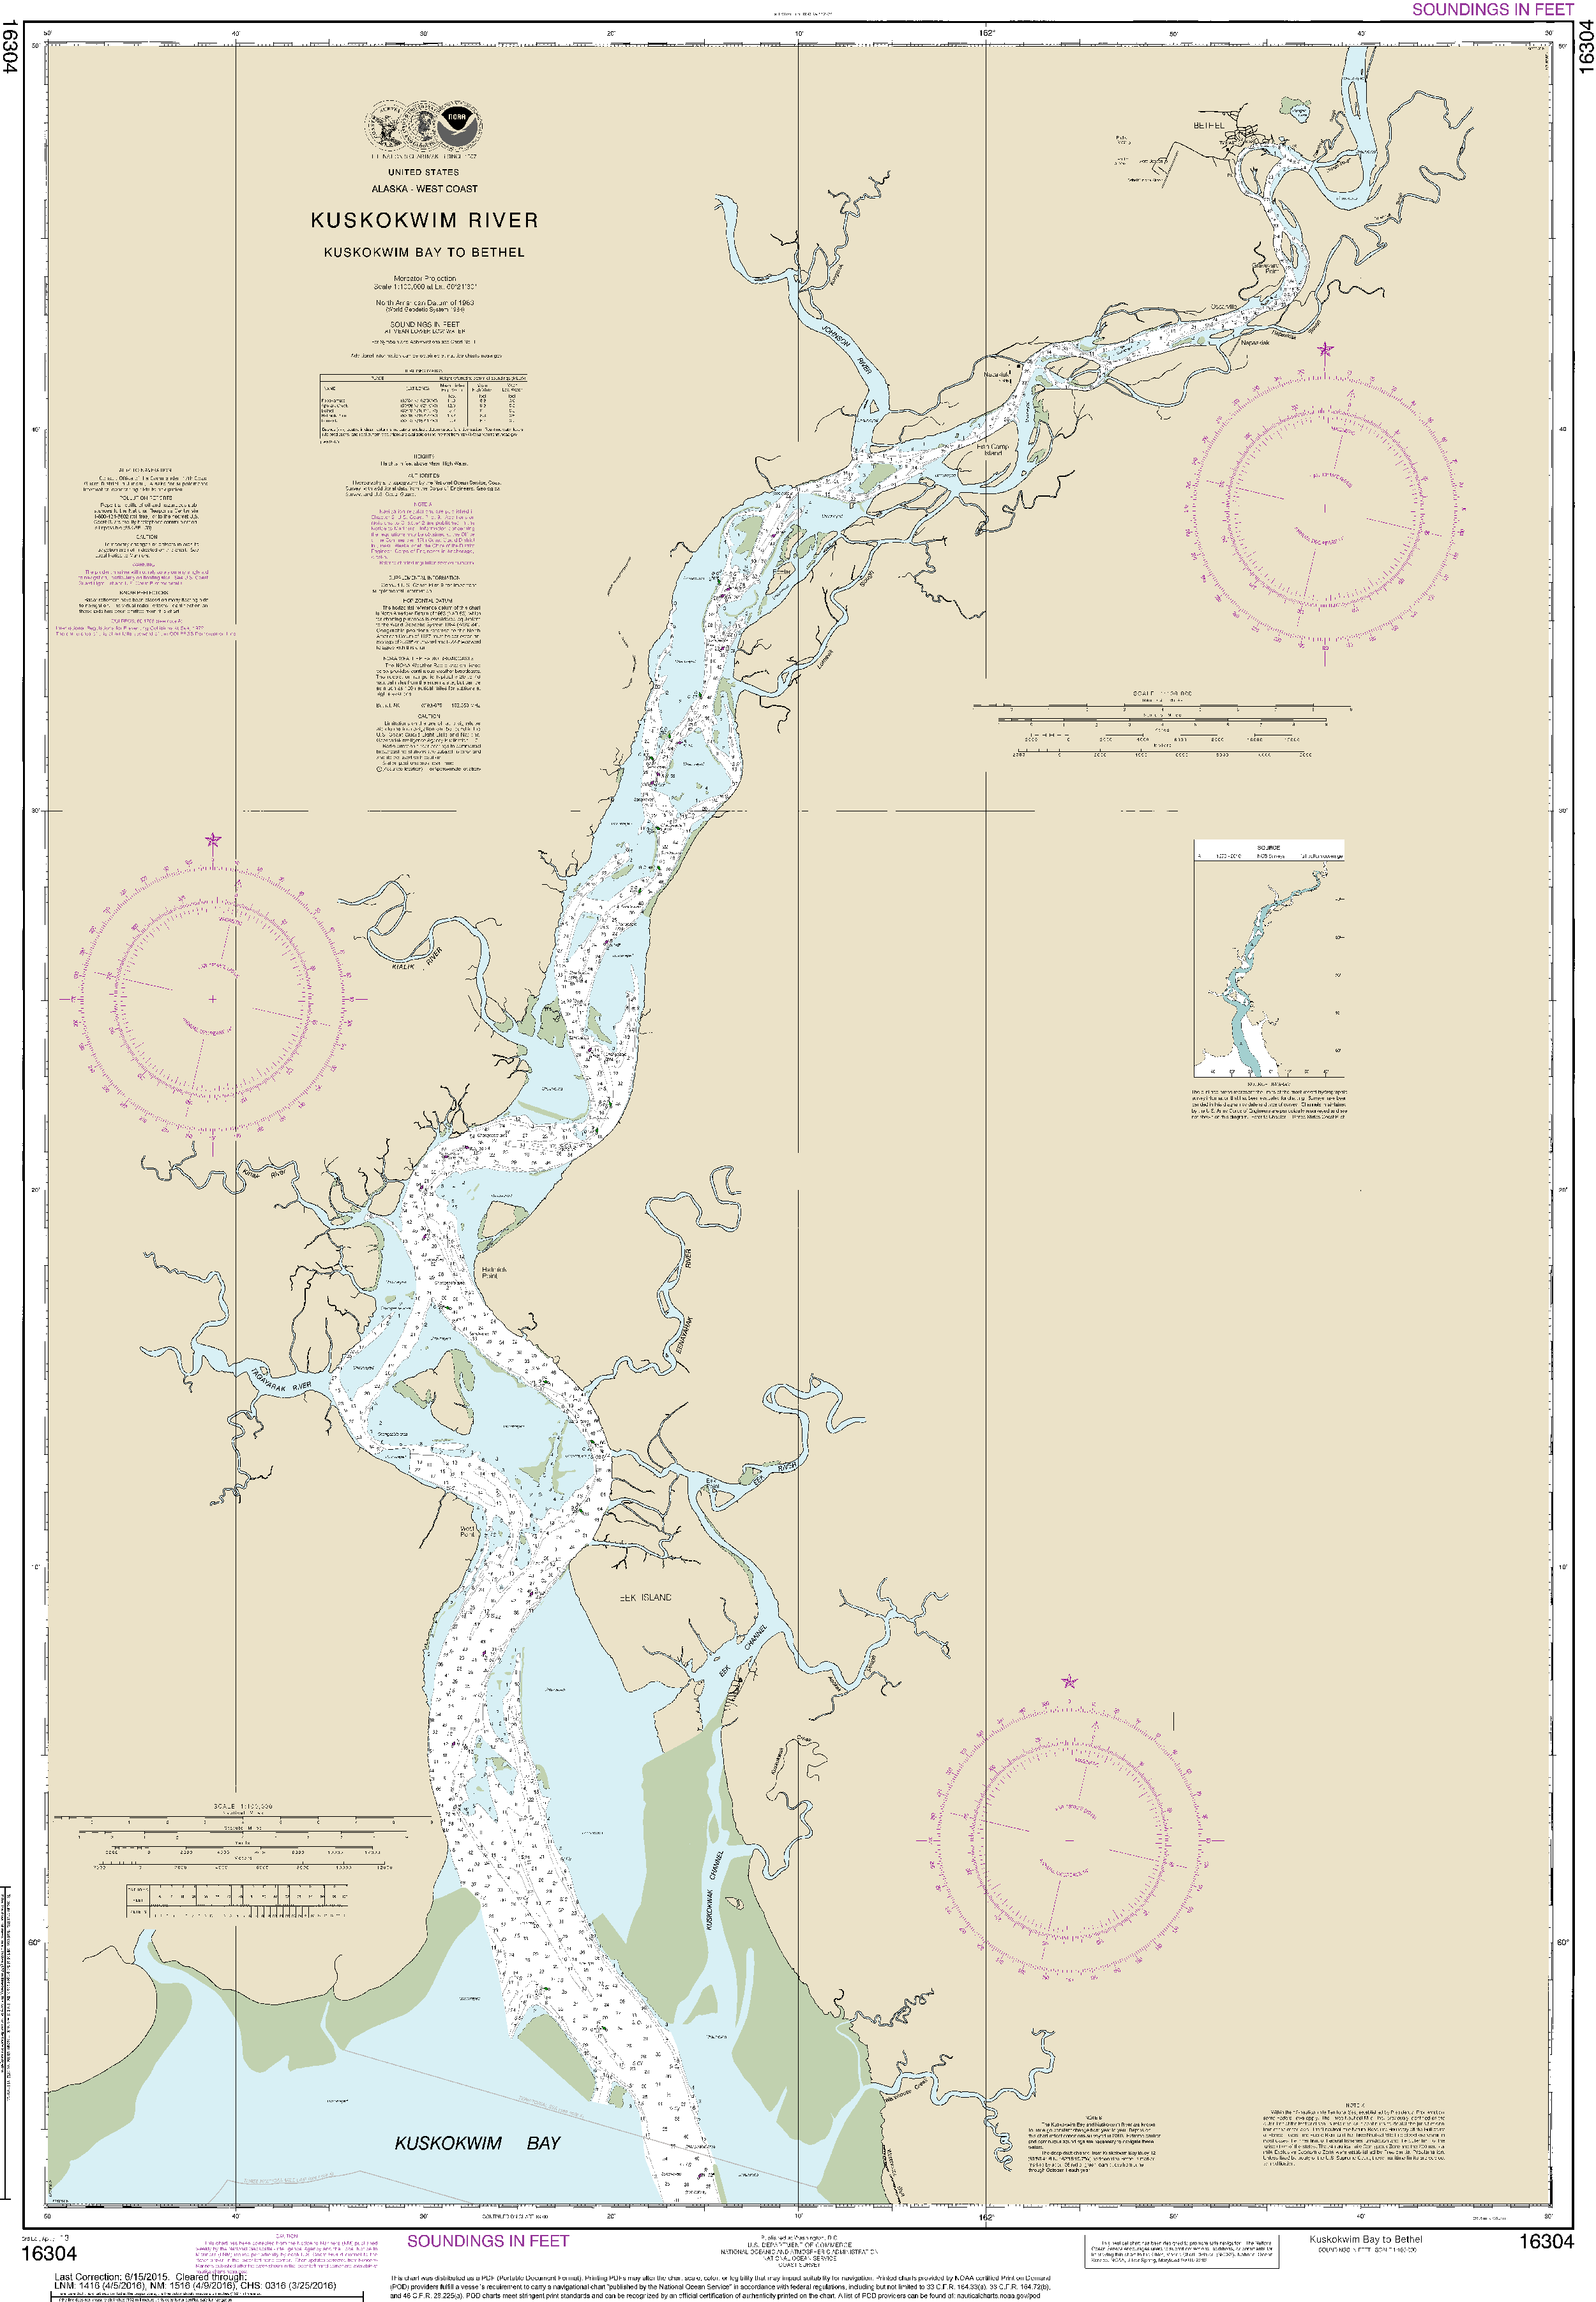 NOAA Nautical Chart 16304: Kuskokwim Bay to Bethel